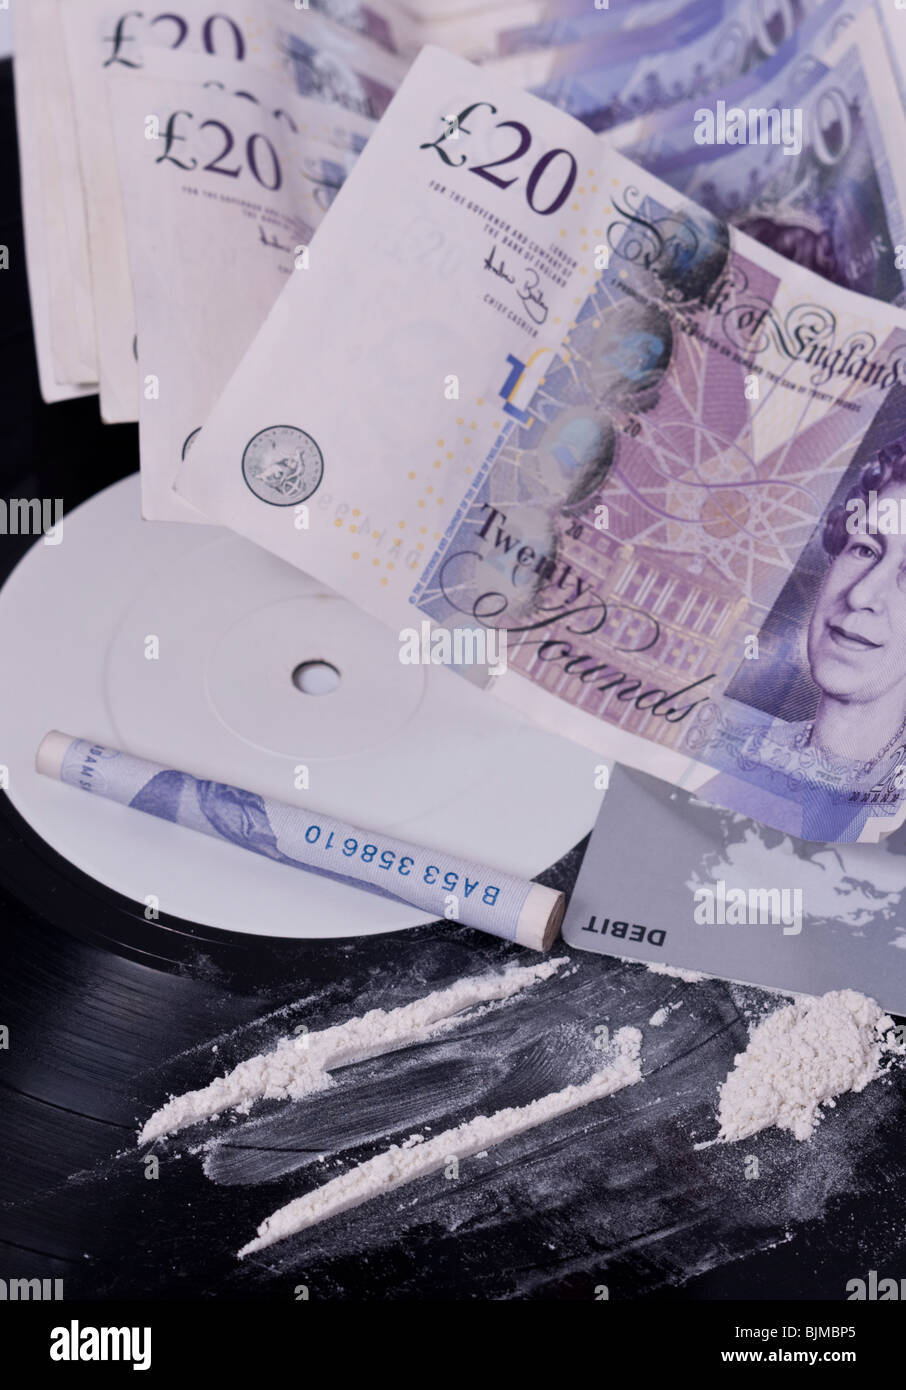 Una foto che mostra il consumo di cocaina nel settore della musica con linee di polvere bianca su una etichetta bianca e record di contanti nel Regno Unito Foto Stock